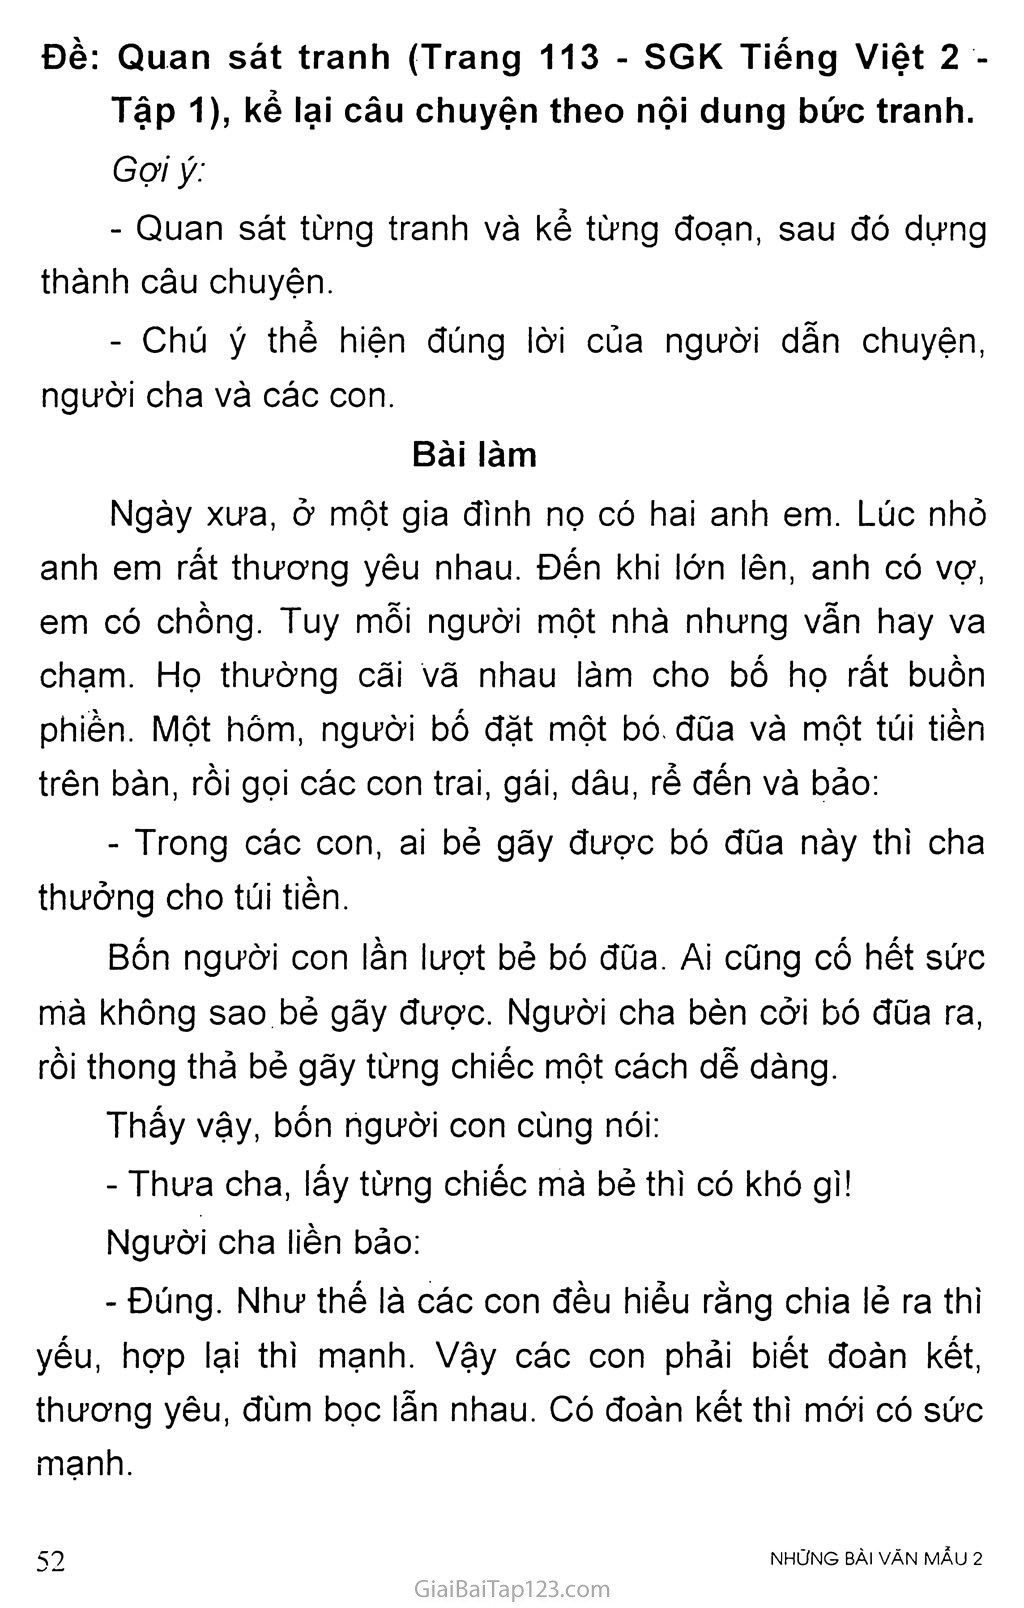 Đề: Quan sát tranh (Trang 113 - SGK Tiếng Việt 2 - Tập 1), kể lại câu chuyện theo nội dung bức tranh trang 1